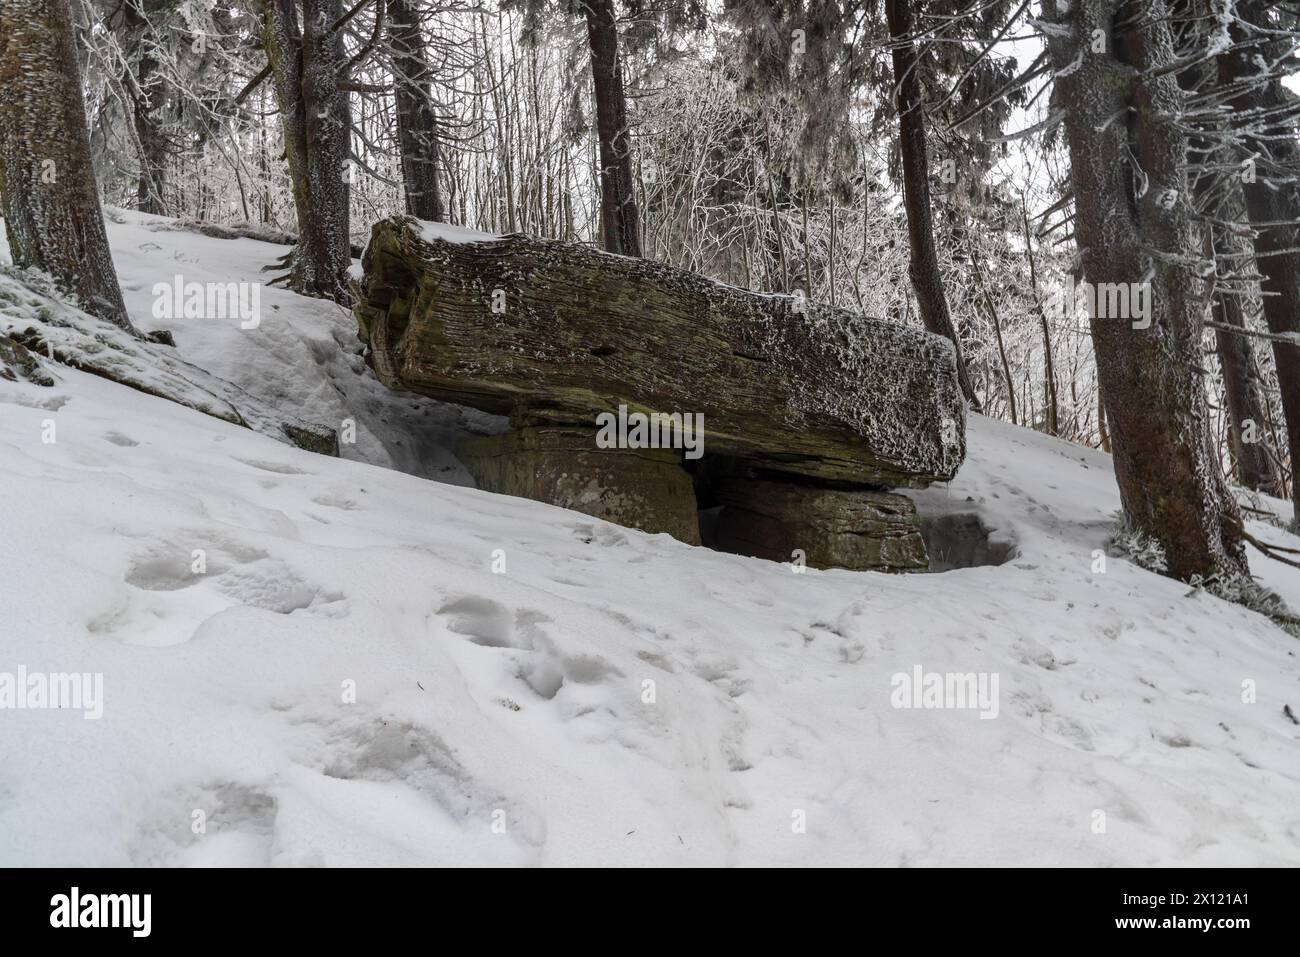 Misteriosa formazione rocciosa di Certuv stul con alberi intorno a Certuv mlyn collina vertice in inverno Moravskoslezske Beskydy montagne in ceco repubblica Foto Stock